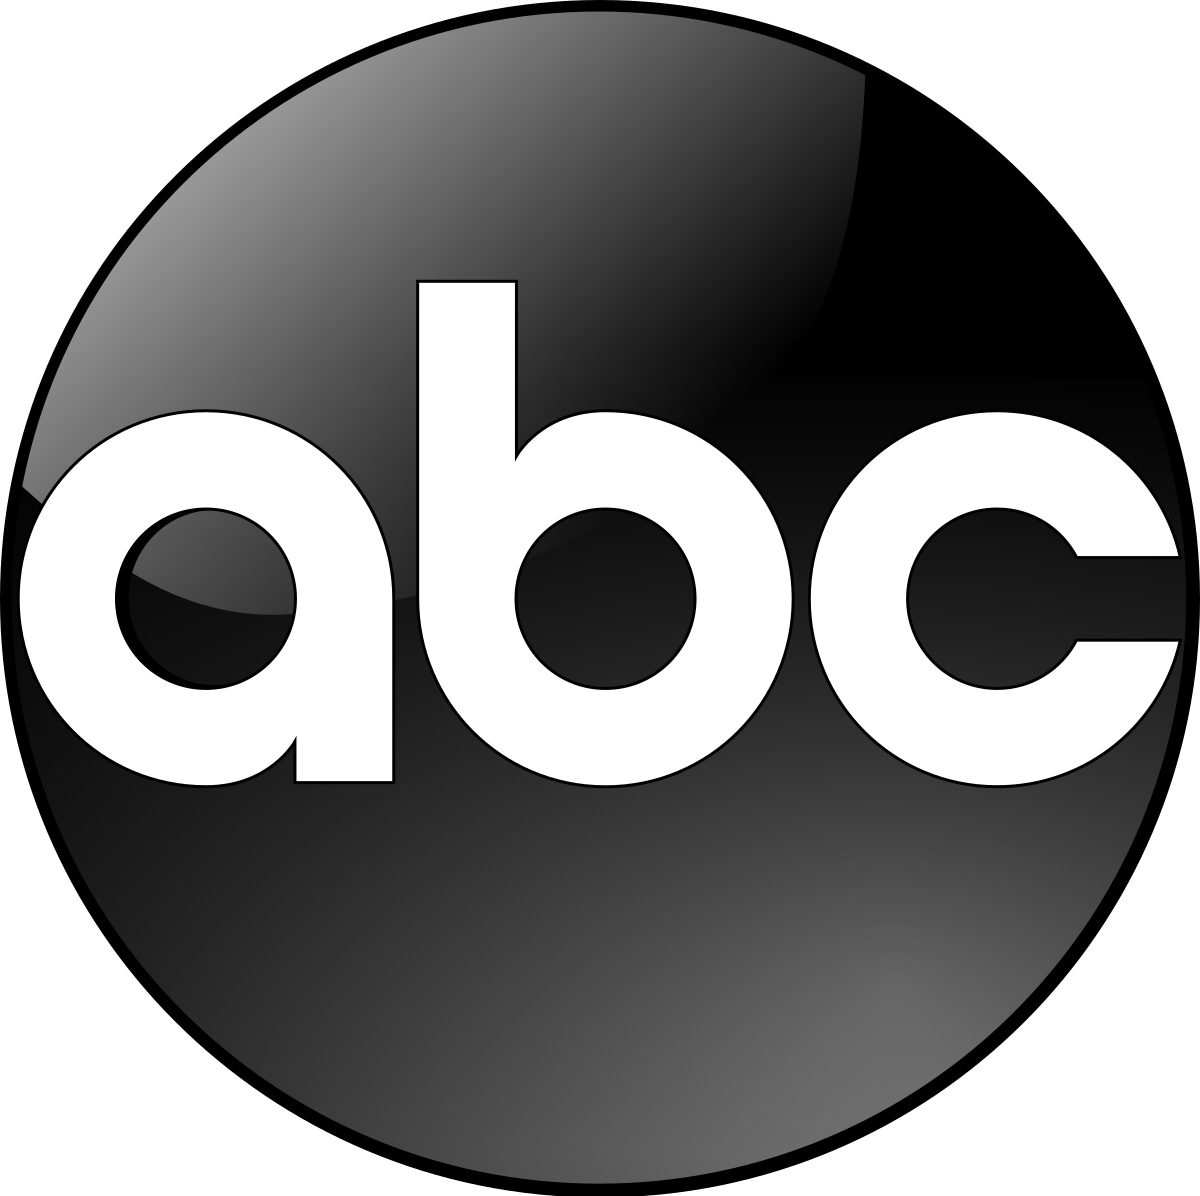 Abcnews.go.com Logo - American Broadcasting Company